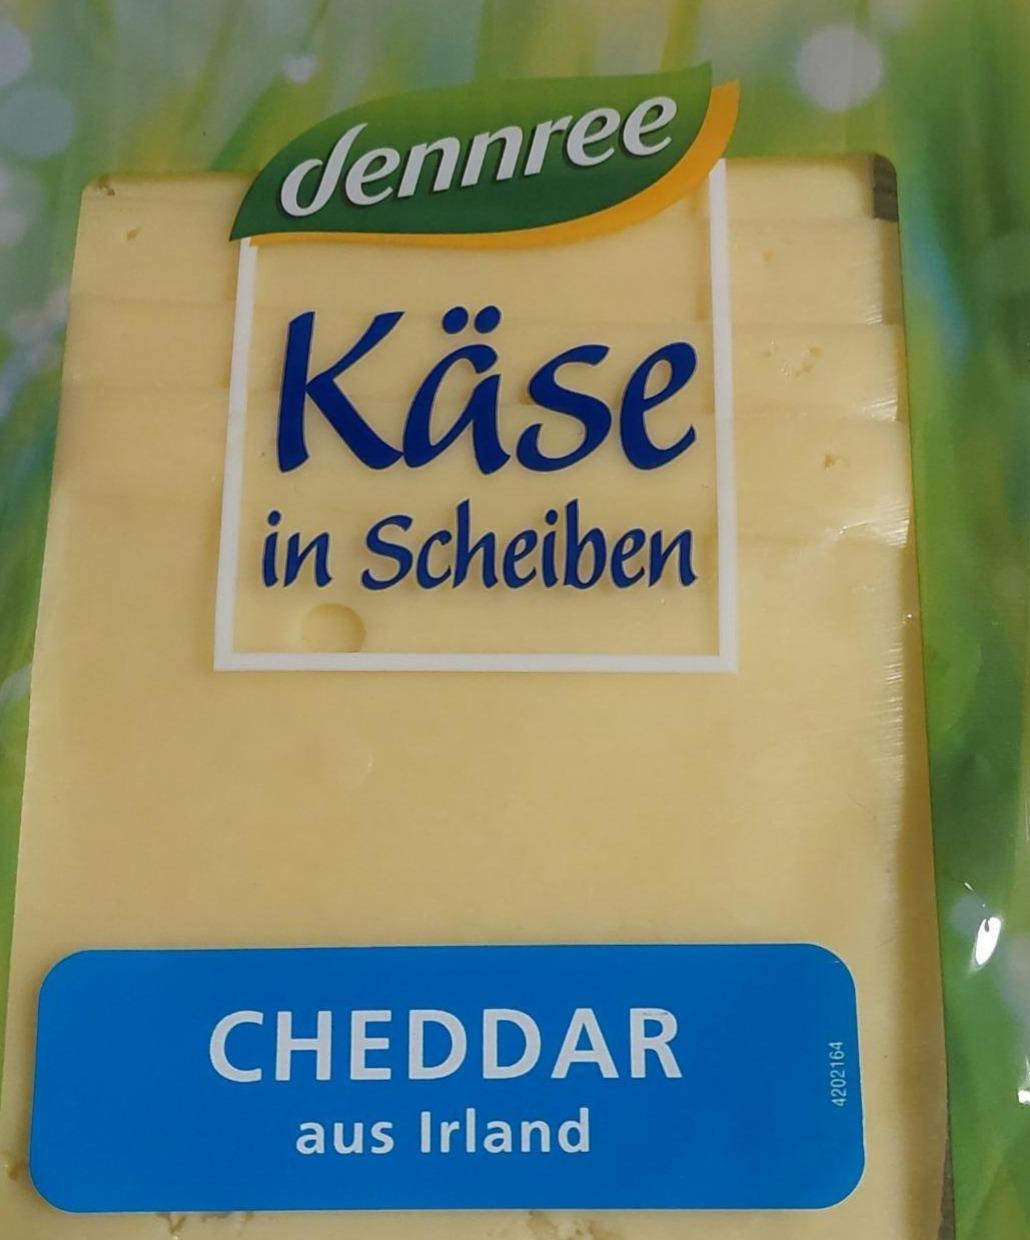 Fotografie - Käse in scheiben cheddar aus Irland Dennree